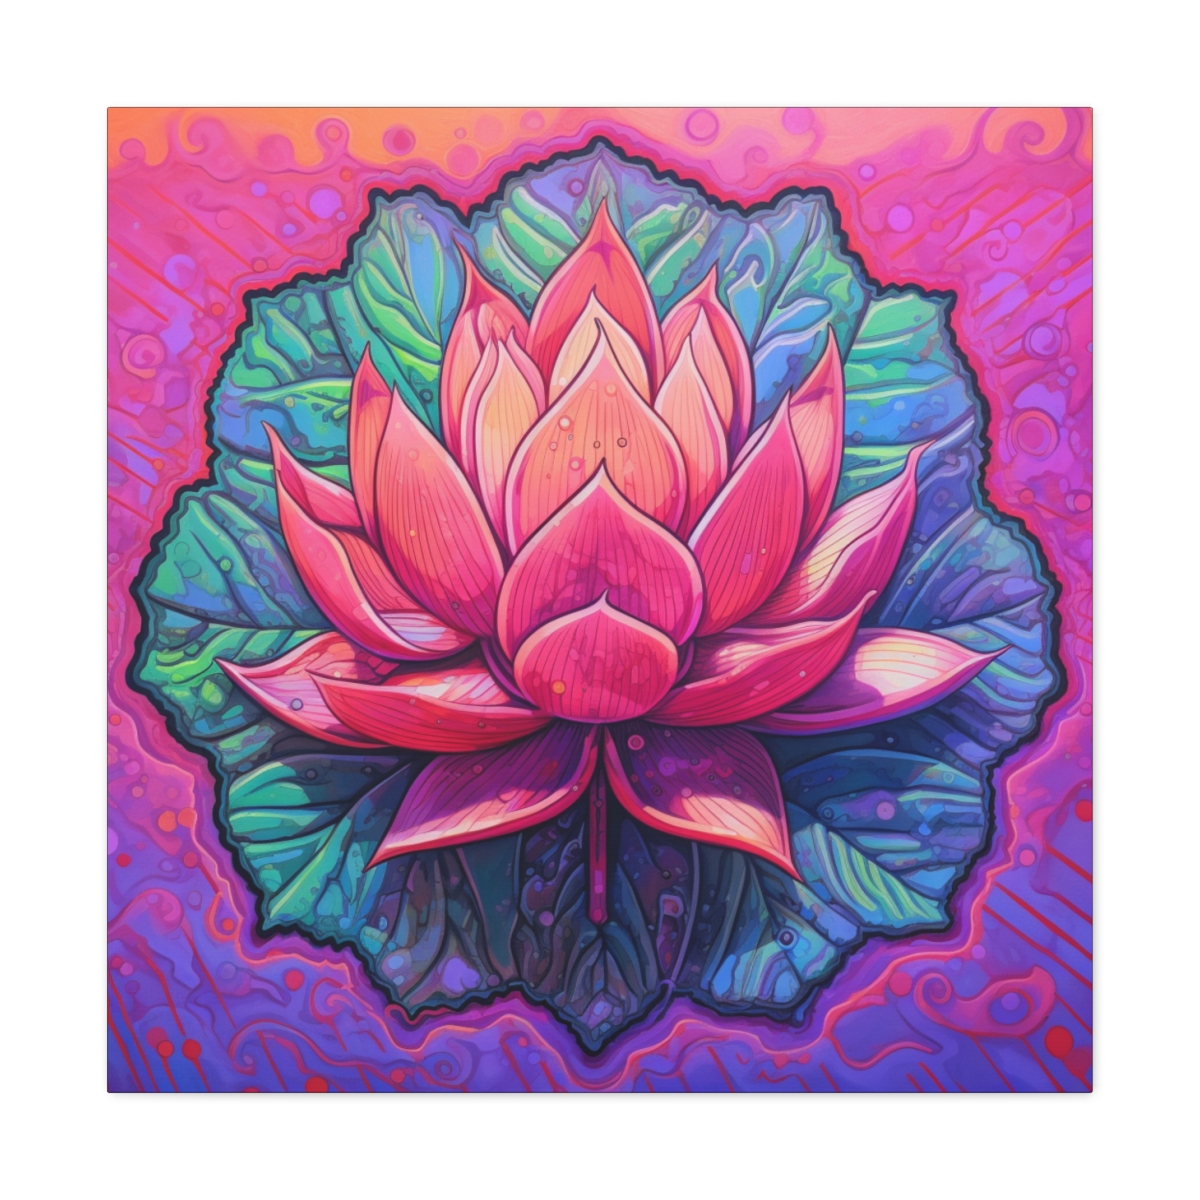 Zen Art Print: The Lotus Flower Reimagined